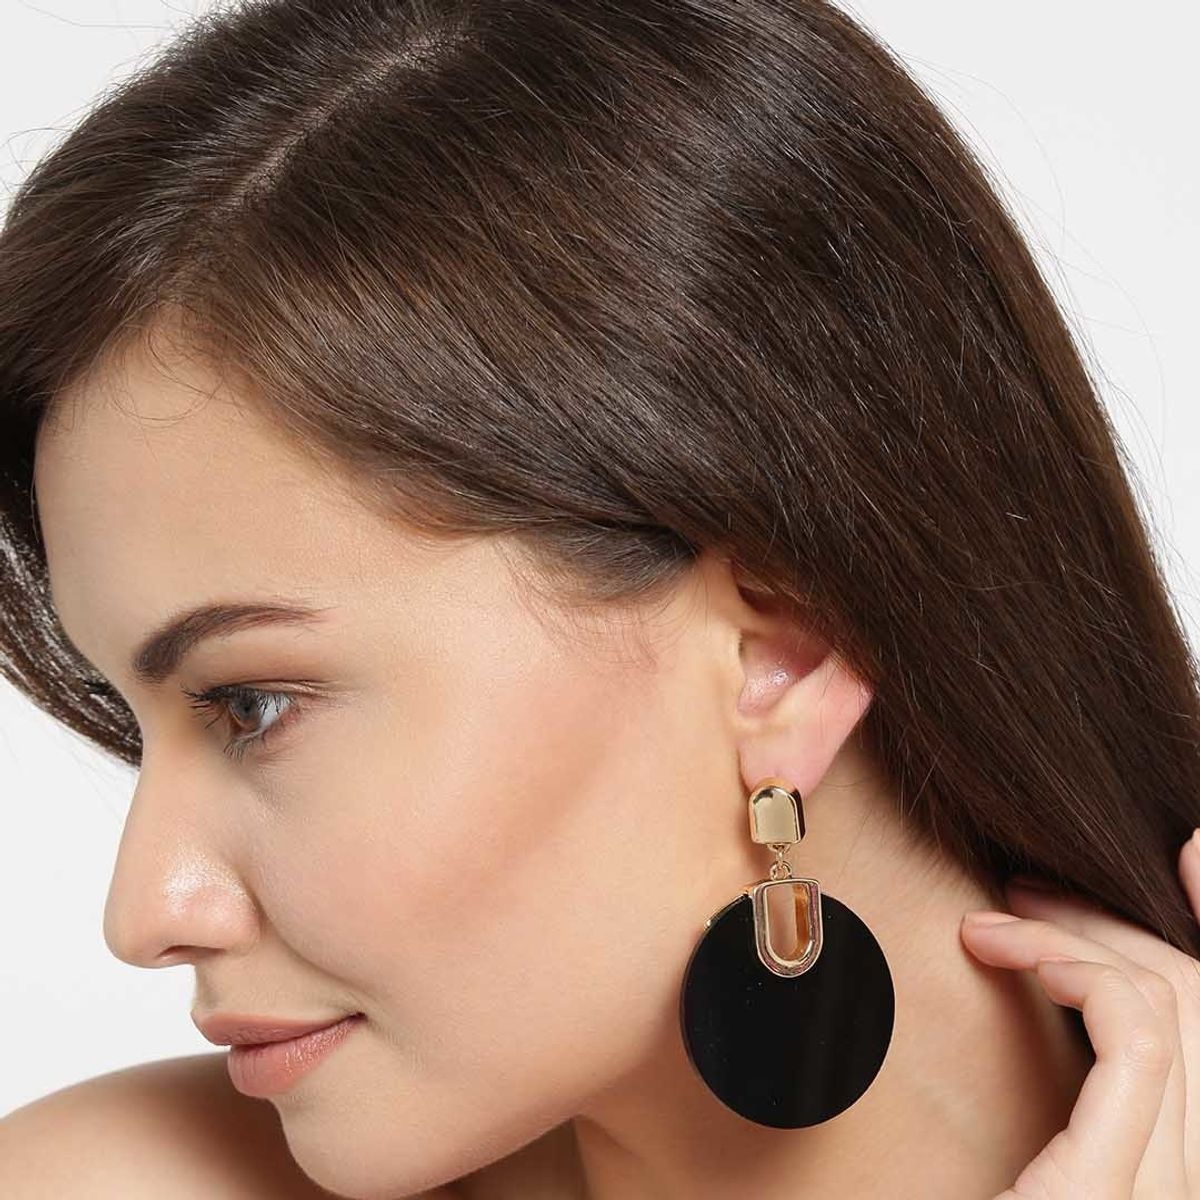 Artificial Round Hoop Earrings Gender Women at Best Price in Delhi  Sami  Arts